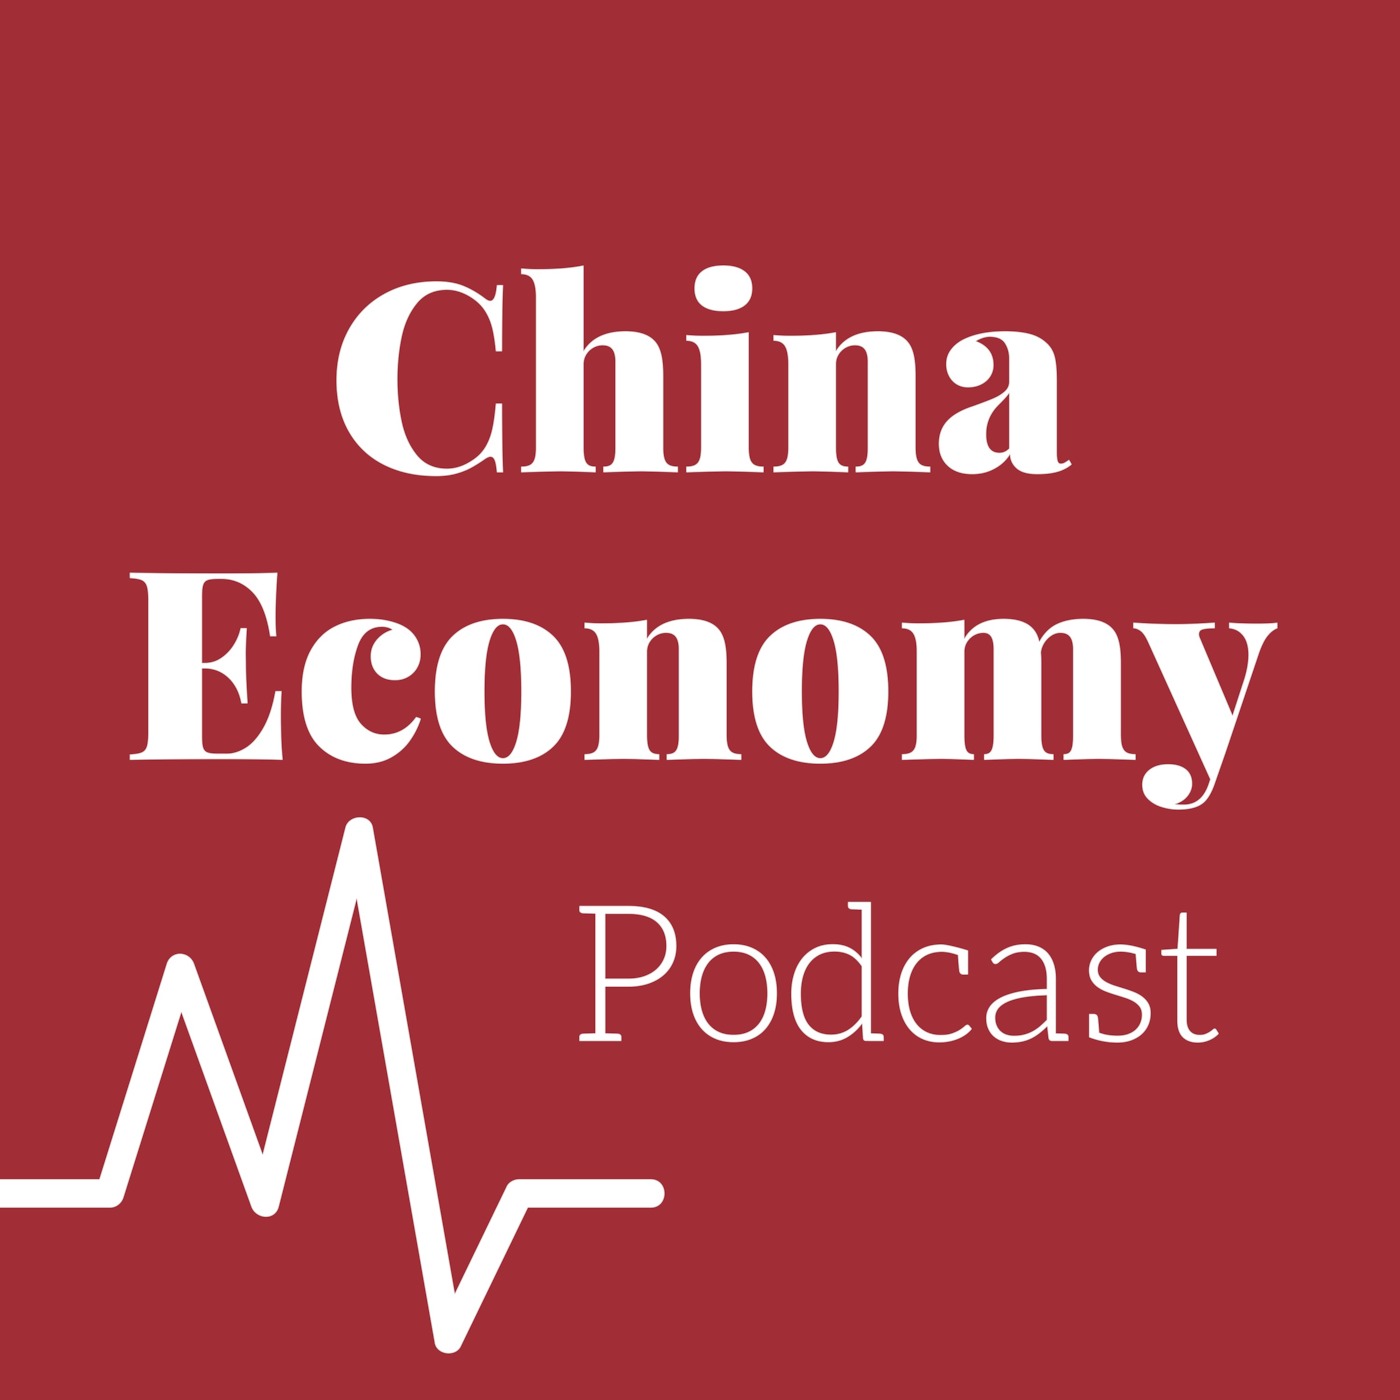 Bonus: China Economy Podcast needs you